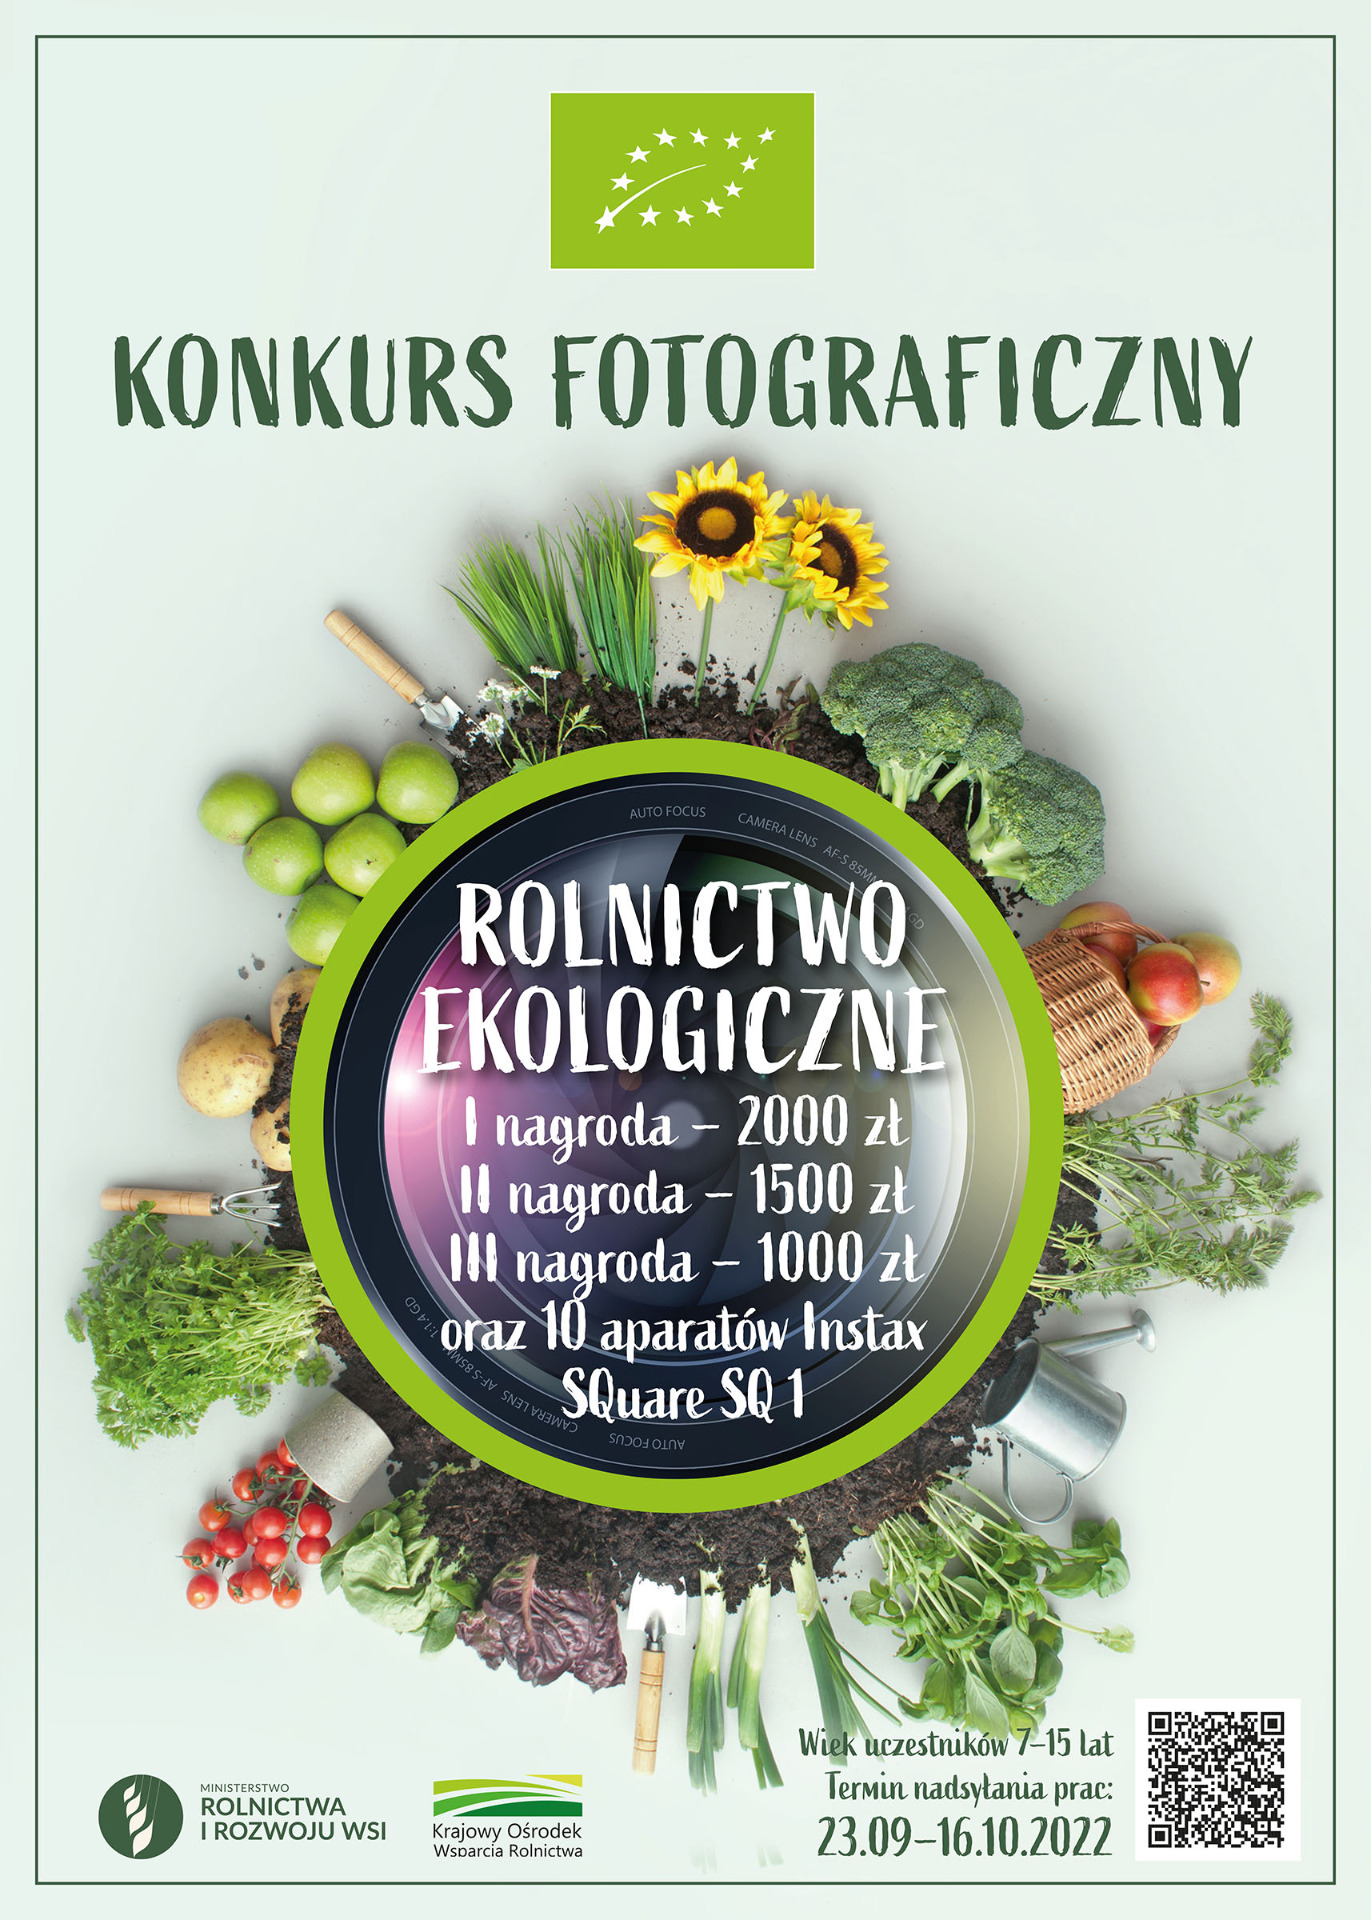 Konkurs fotograficzny "Rolnictwo ekologiczne" - Obrazek 1